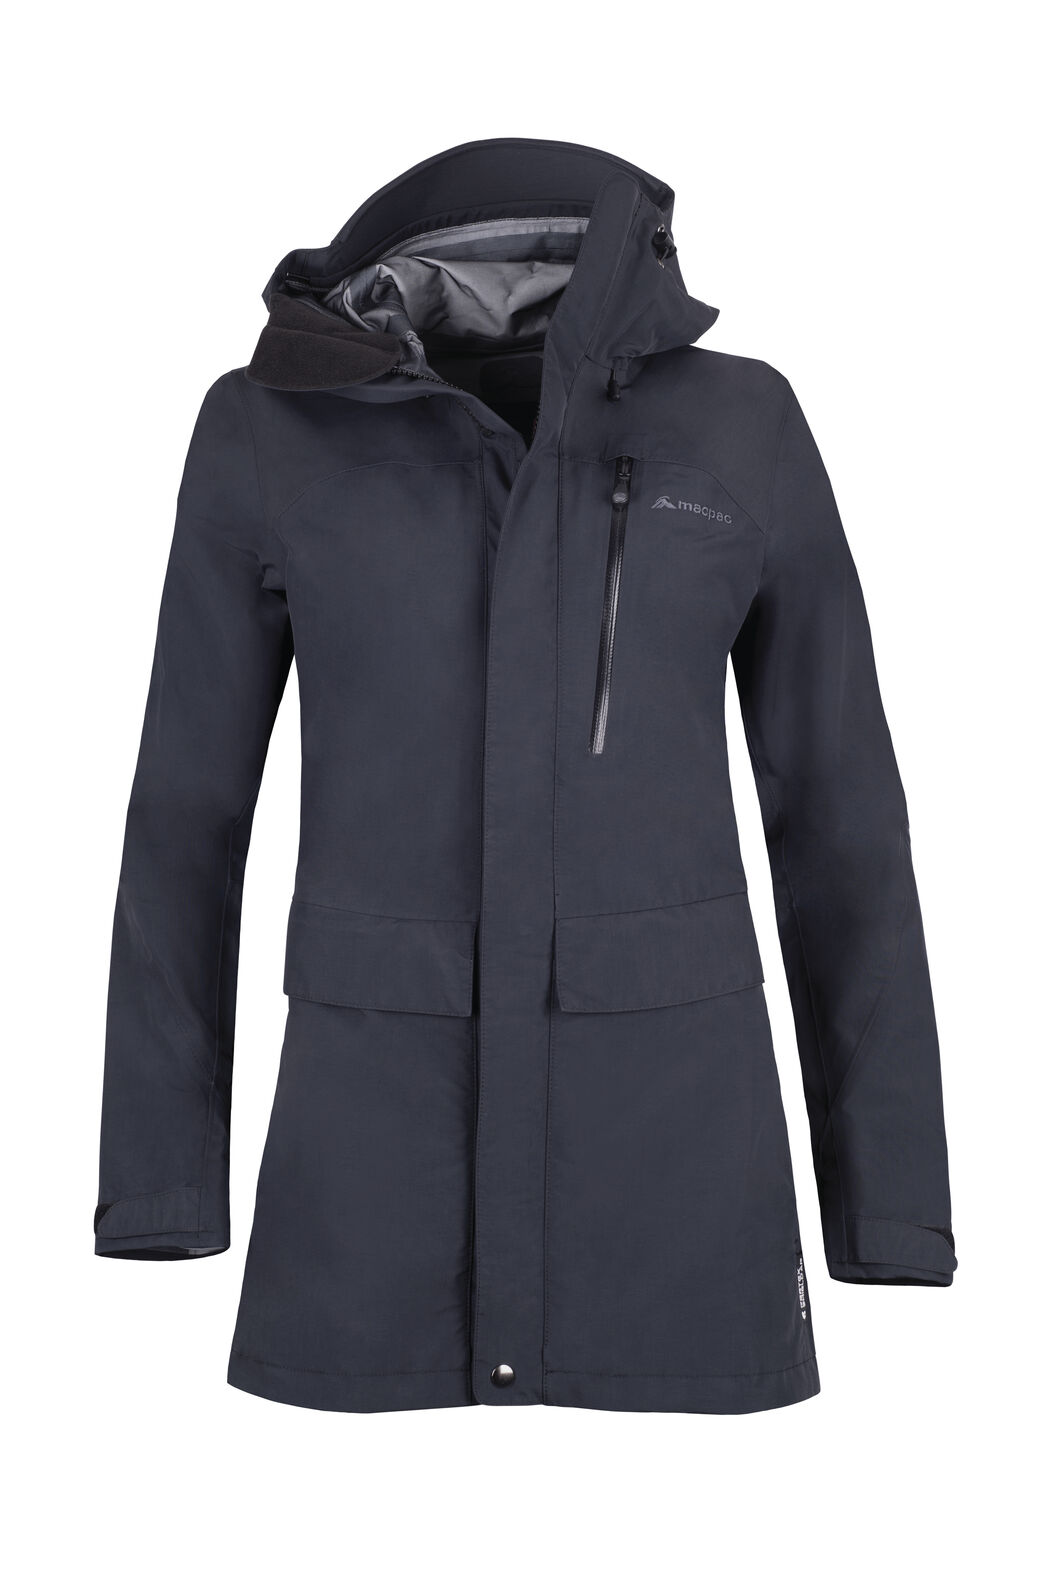 Macpac Resolution Pertex® Rain Jacket - Women's | Macpac